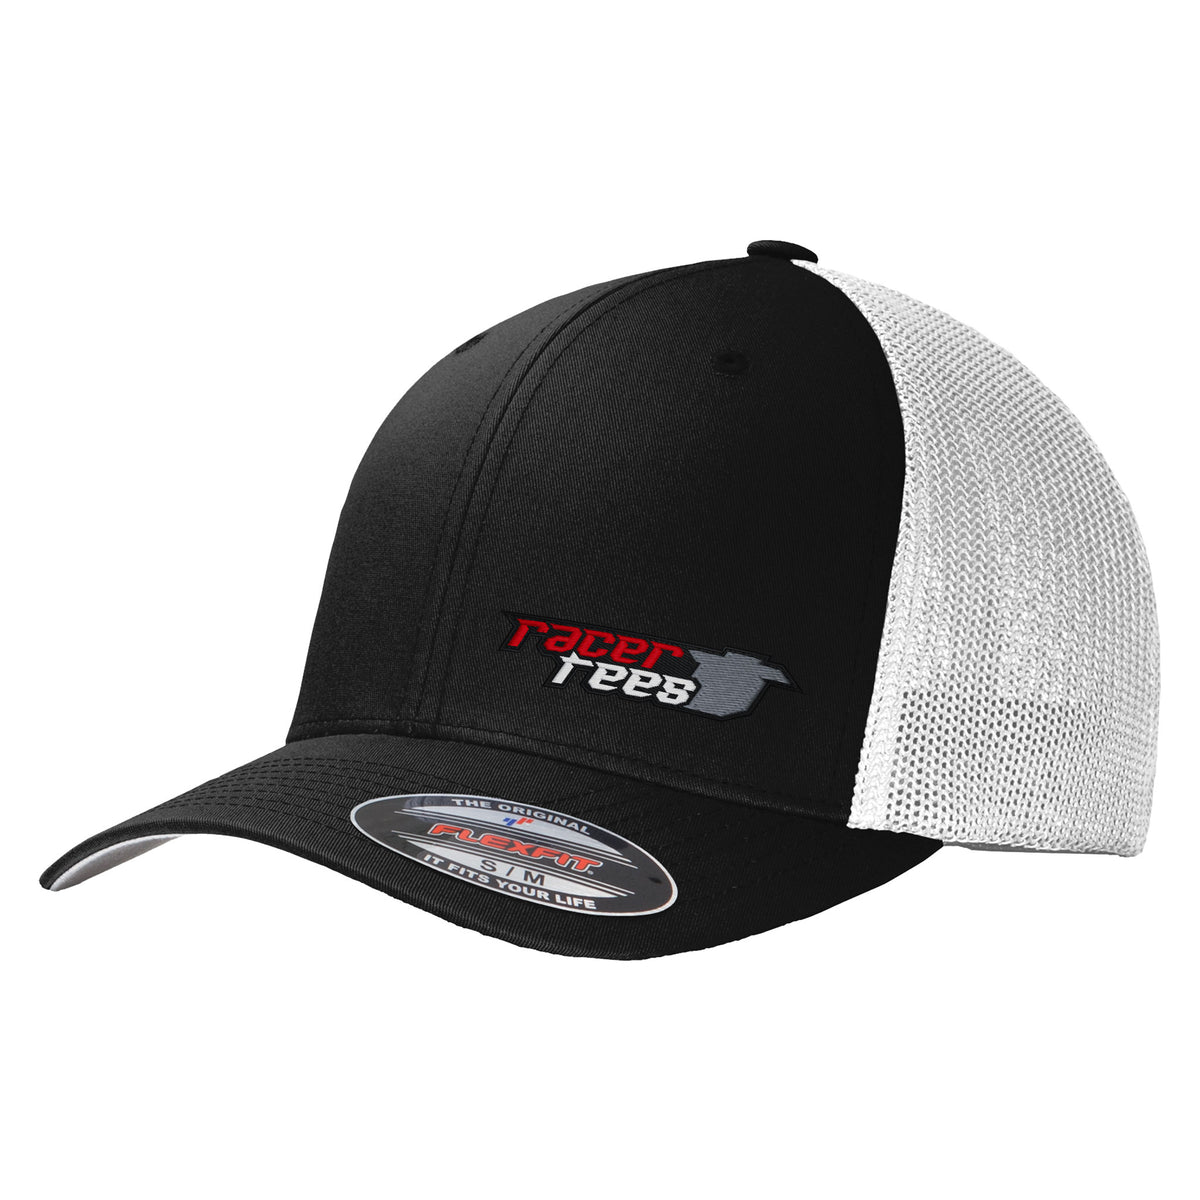 Racer Tees Flexfit Trucker Hat | Black/White